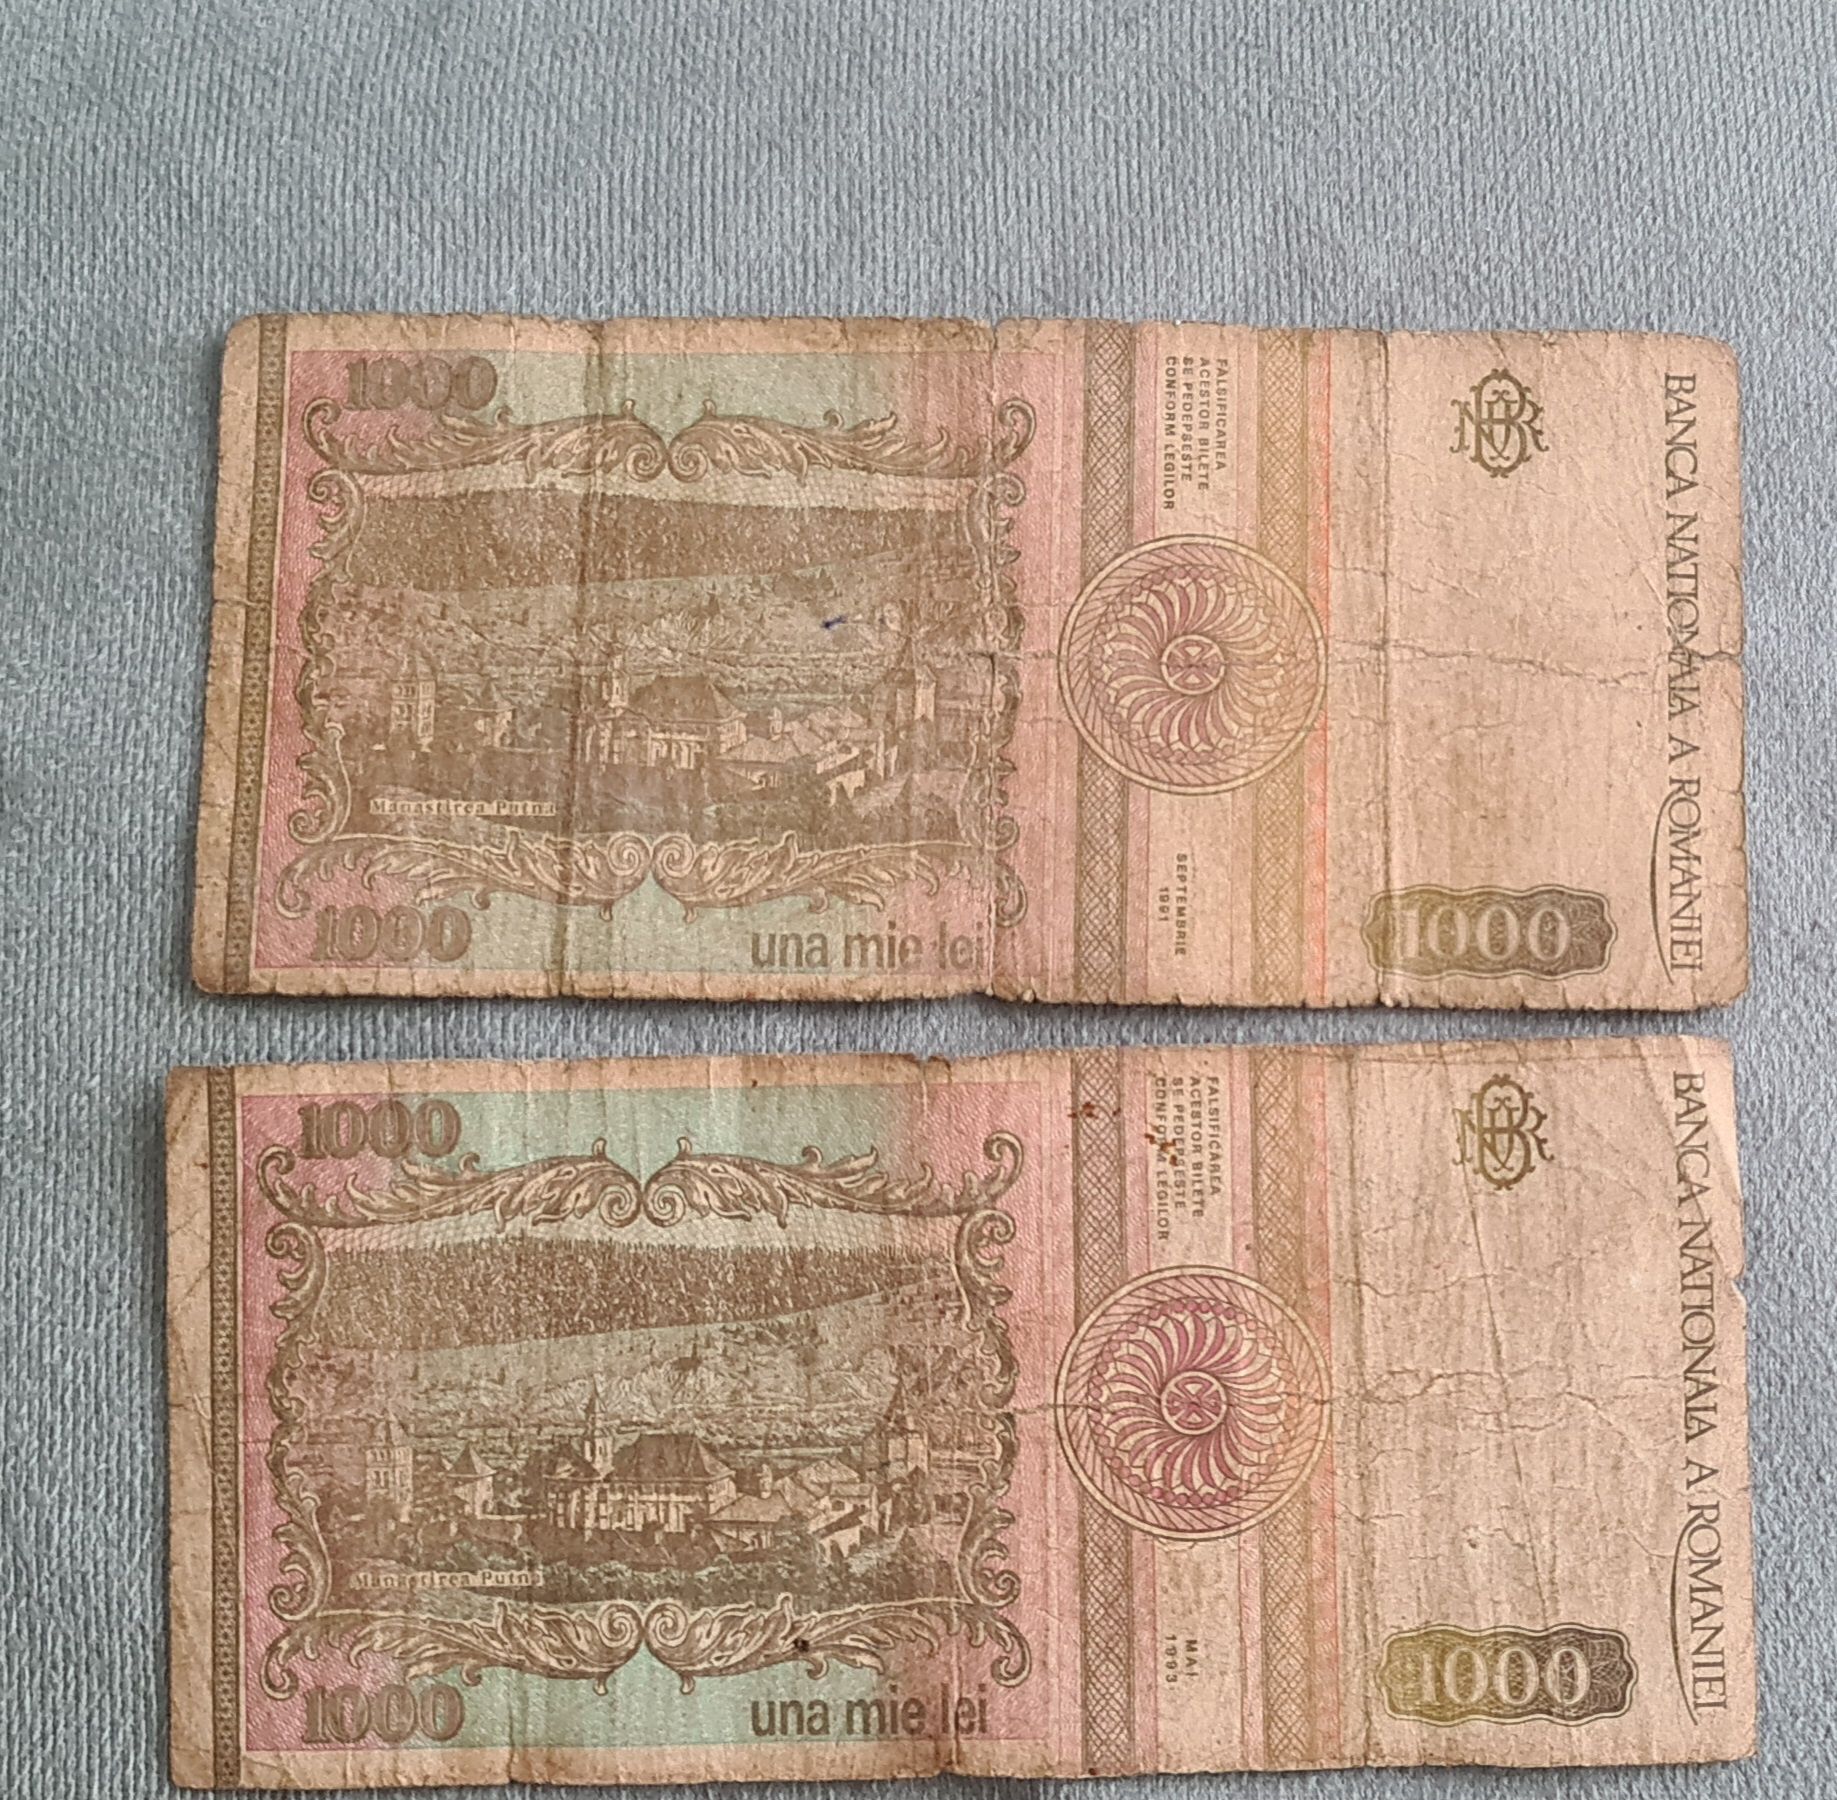 Bancnote 1000 lei Mihai Eminescu 1991 si 1993